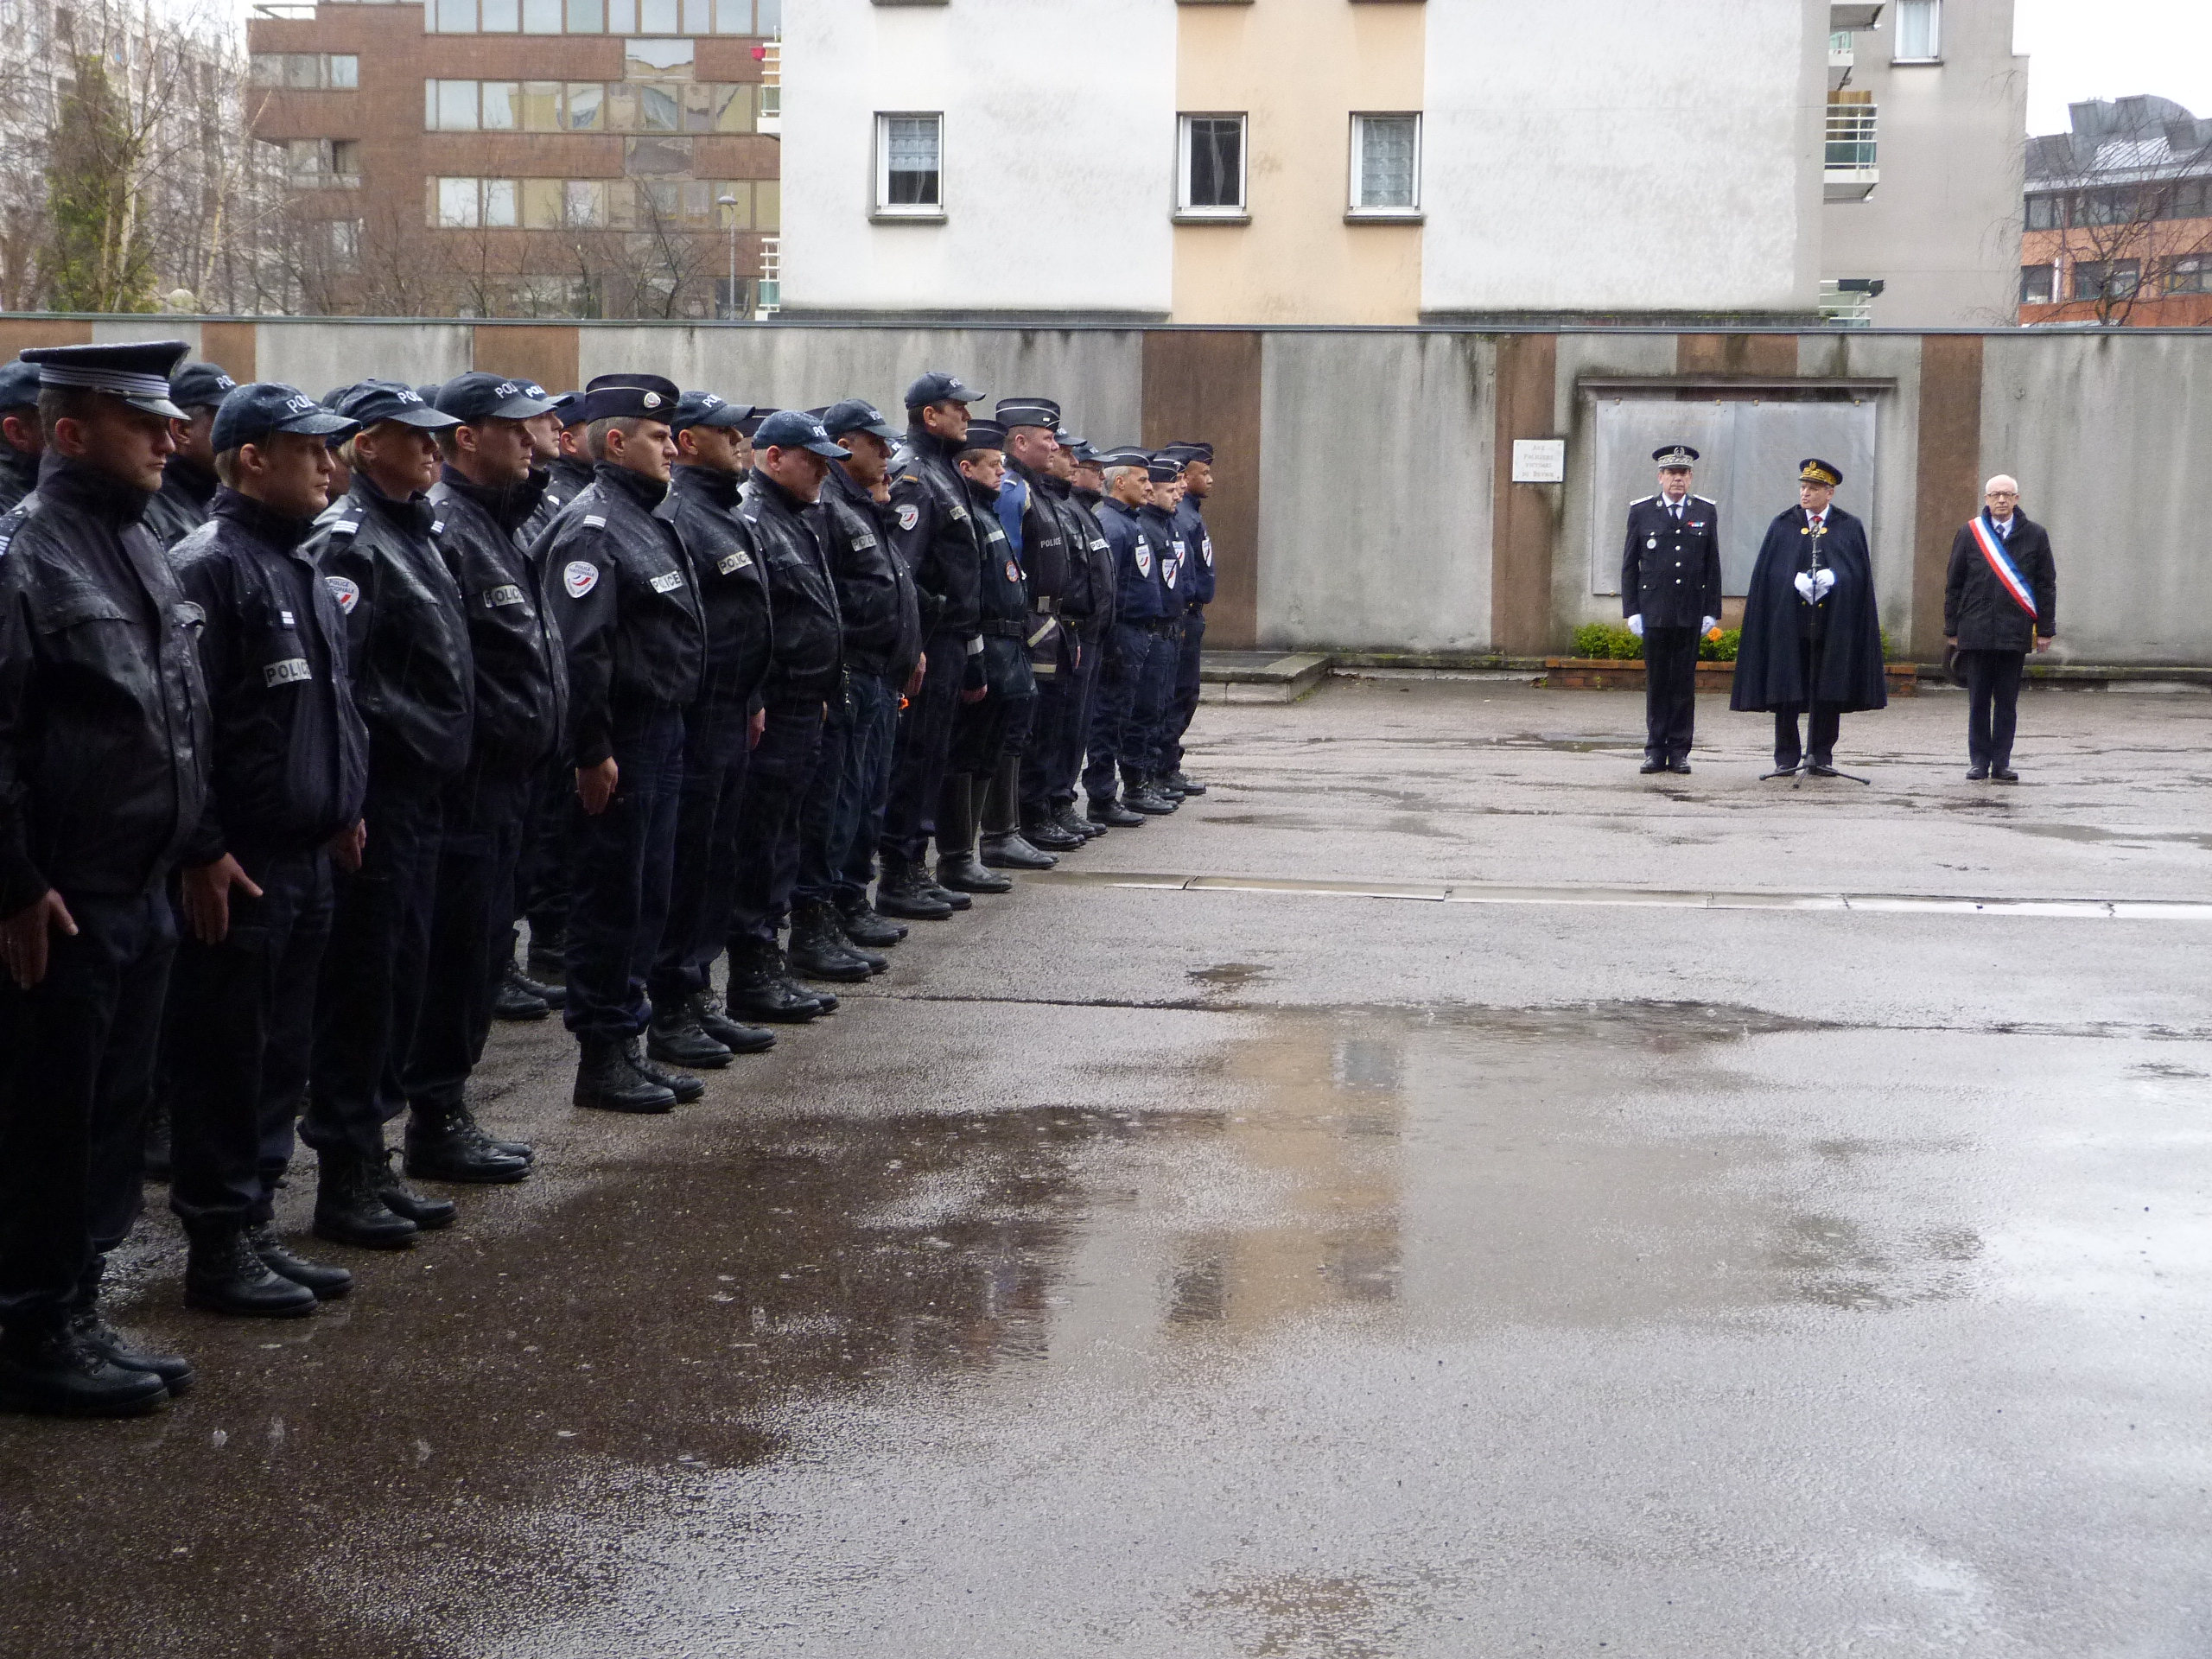 Le préfet de la Région Haute-Normandie a remercié les policiers de leur engagement pour la protection et la sécurité des citoyens (Photo DR)